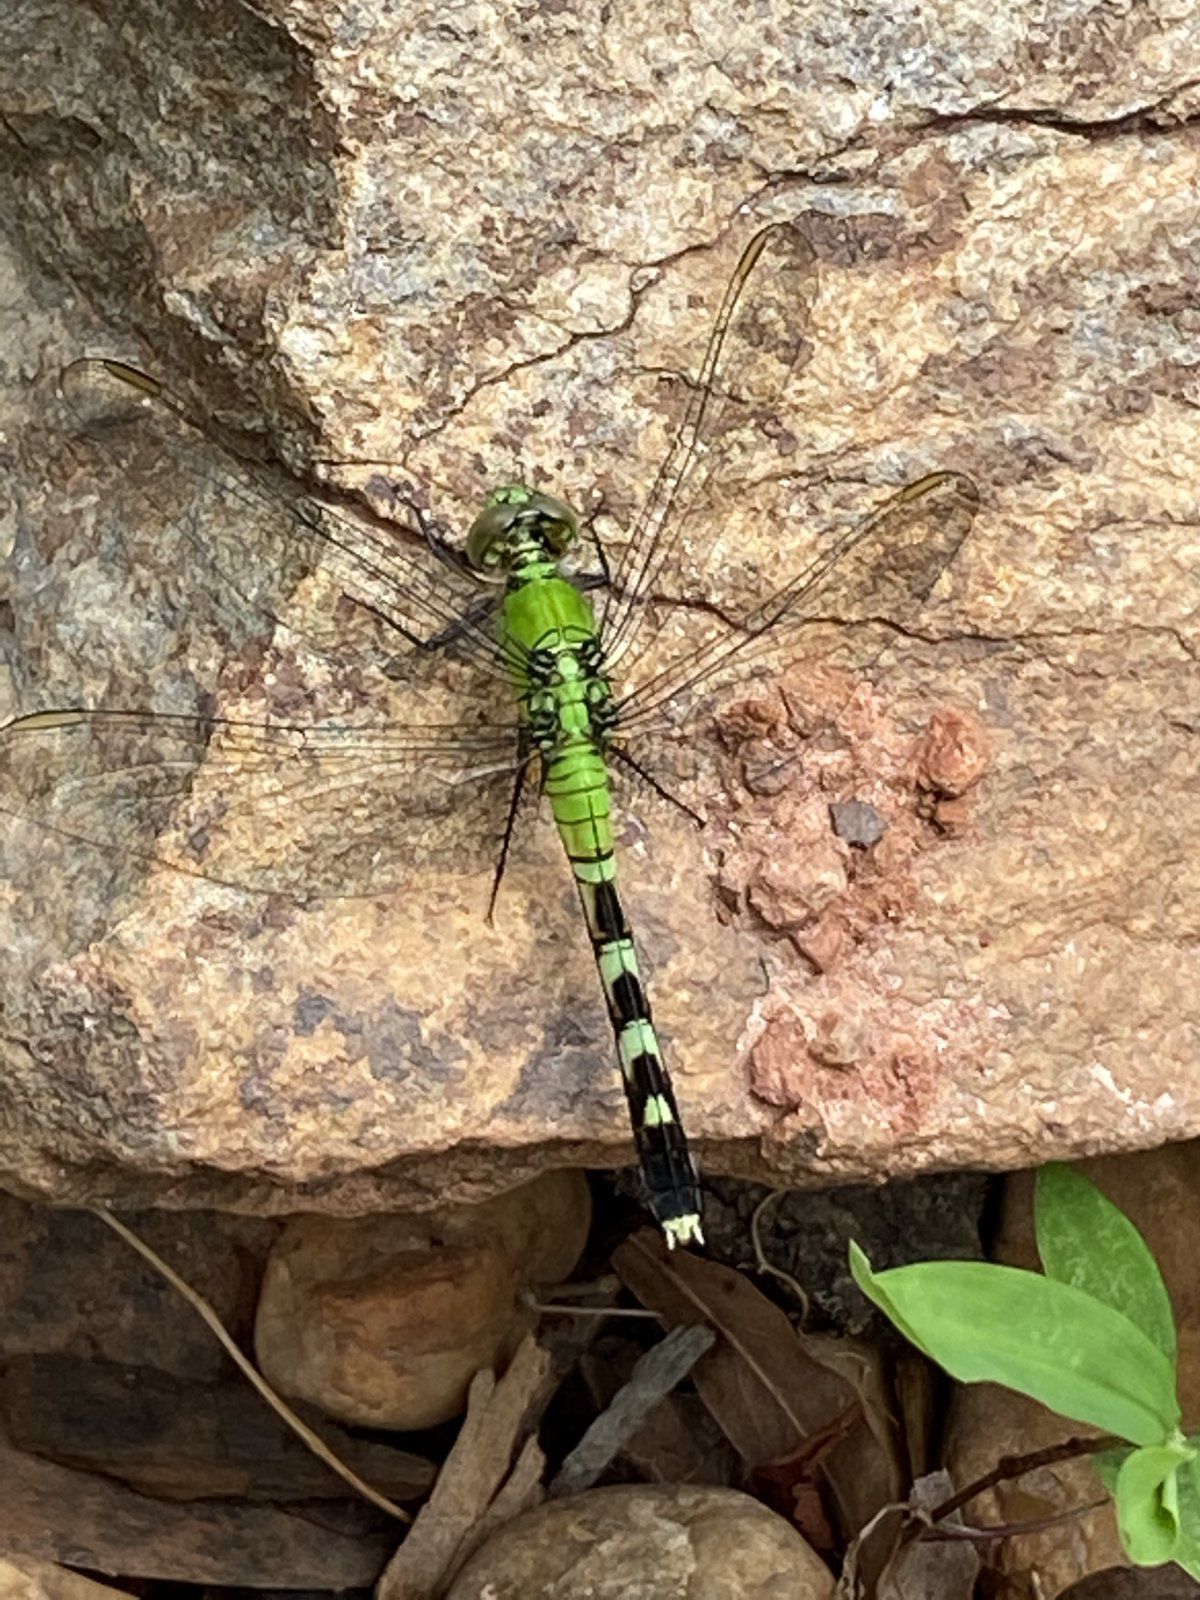 Green Dragonfly-female pondhawk.